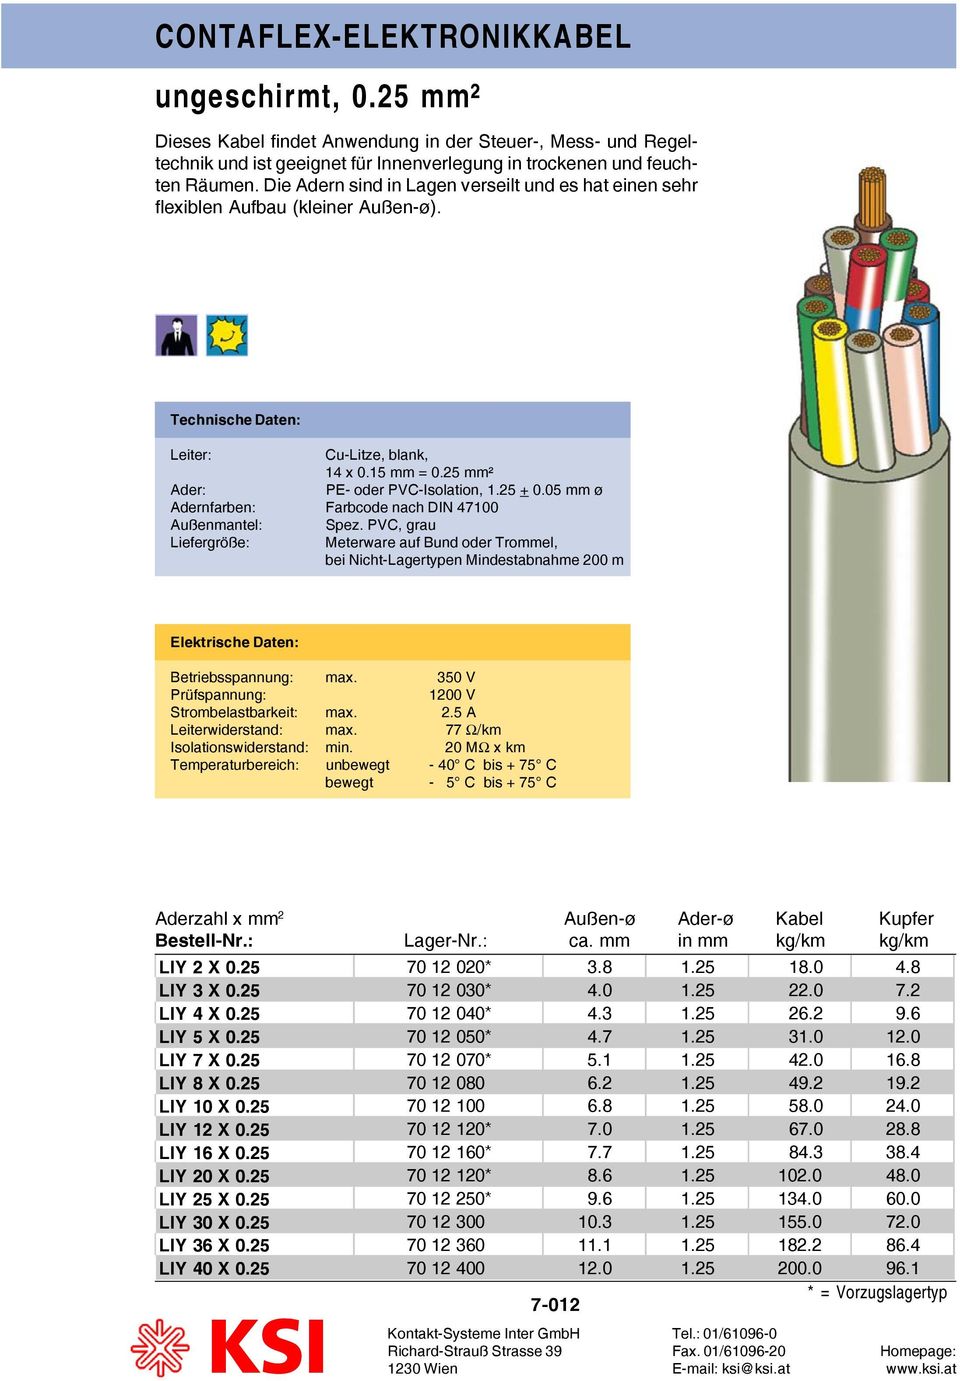 05 mm ø Adernfarben: Farbcode nach DIN 47100 Außenmantel: Spez. PVC, grau Liefergröße: Meterware auf Bund oder Trommel, bei Nicht-Lagertypen Mindestabnahme 200 m Betriebsspannung: max.